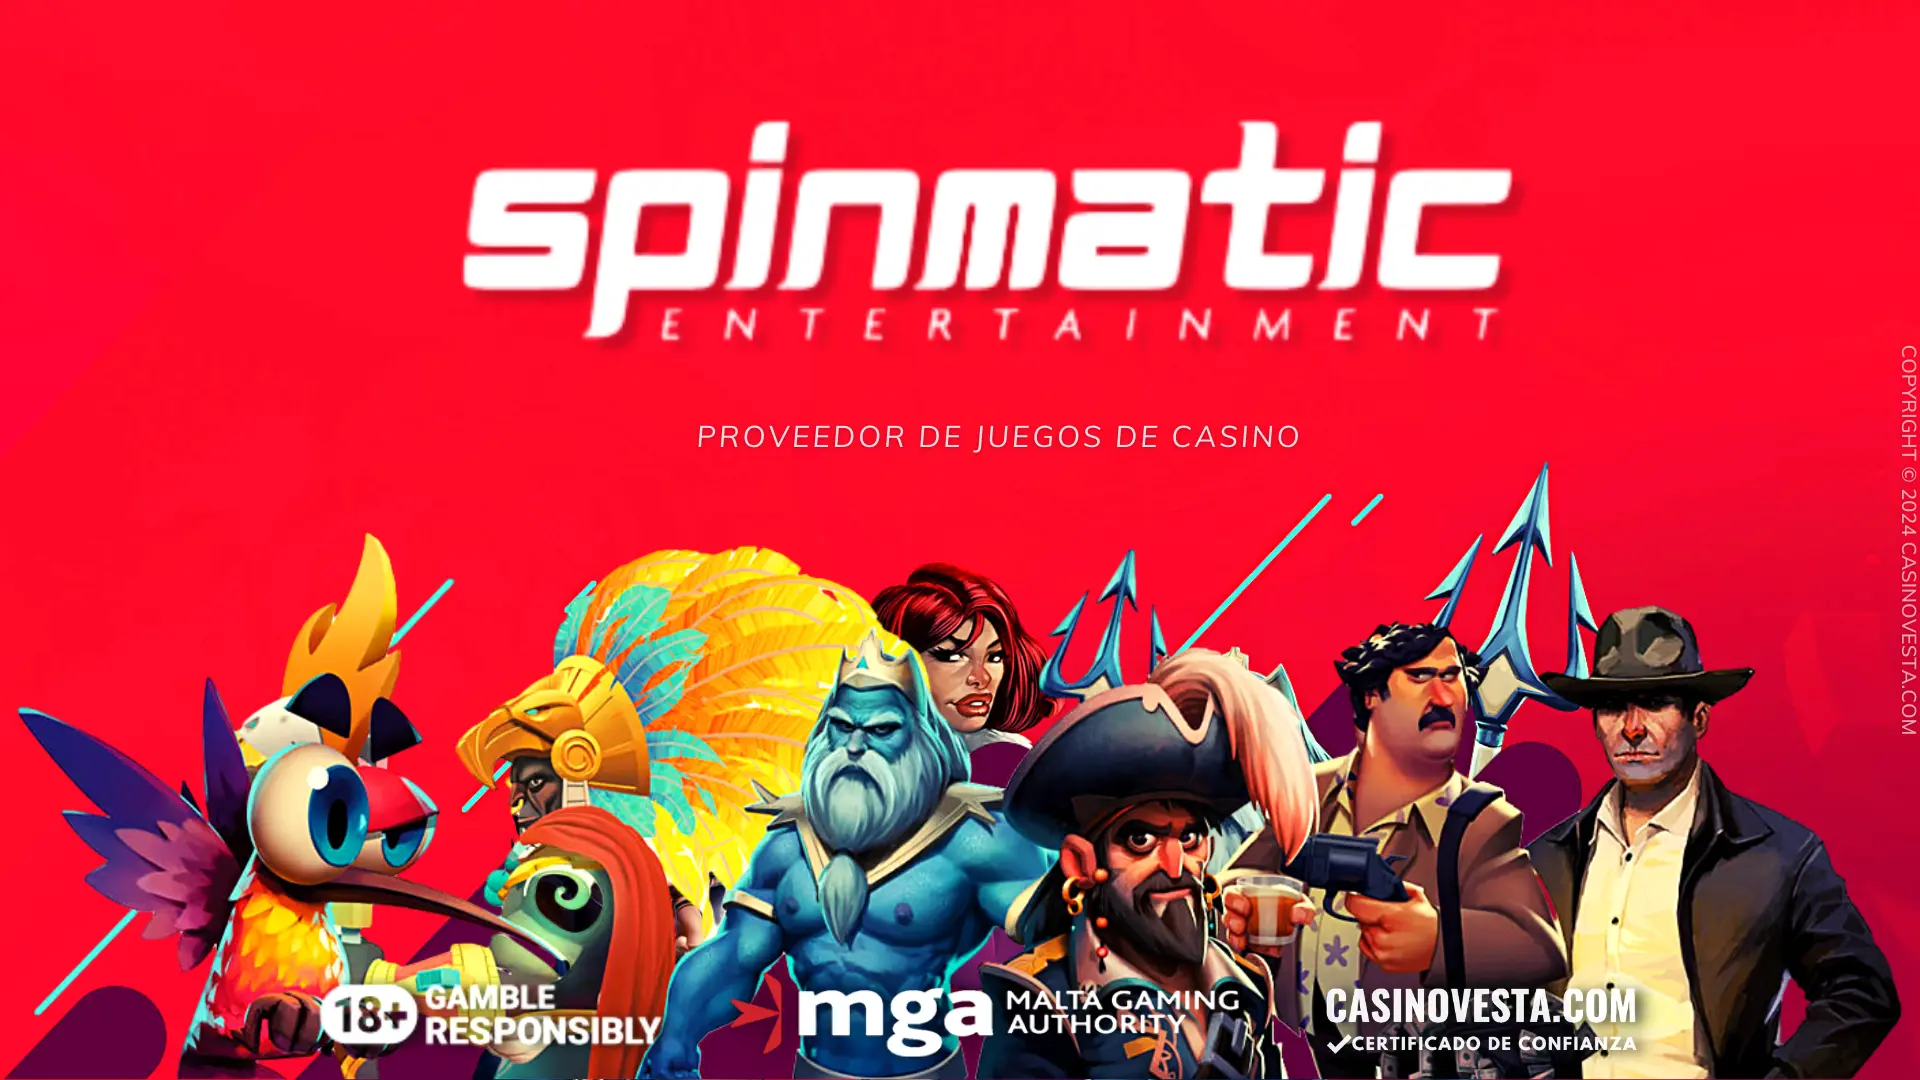 Revisión del proveedor de juegos de casino Spinmatic Entertainment